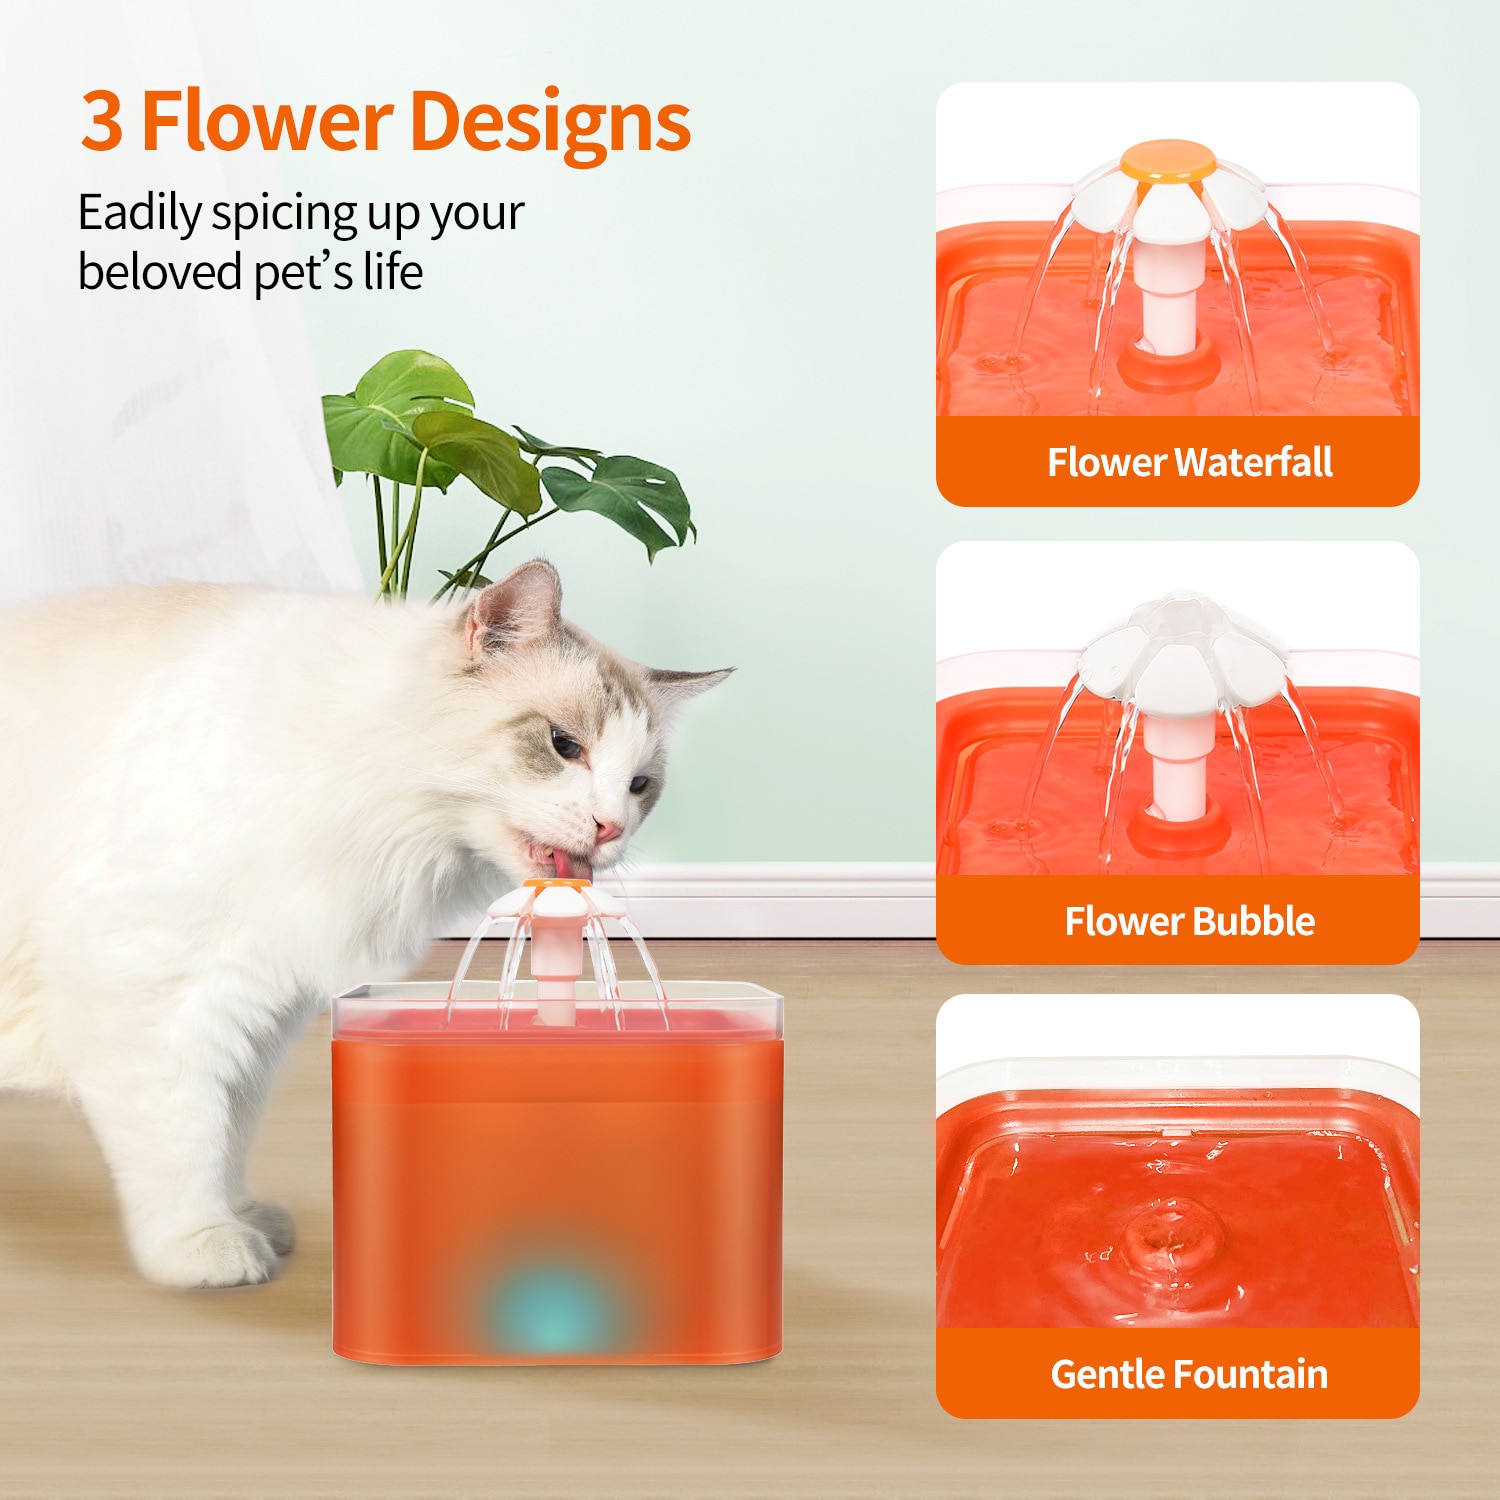 2l capacidade automática gato fonte de água com iluminação led usb pet dispensador de água com recirculação filtring para gatos alimentador